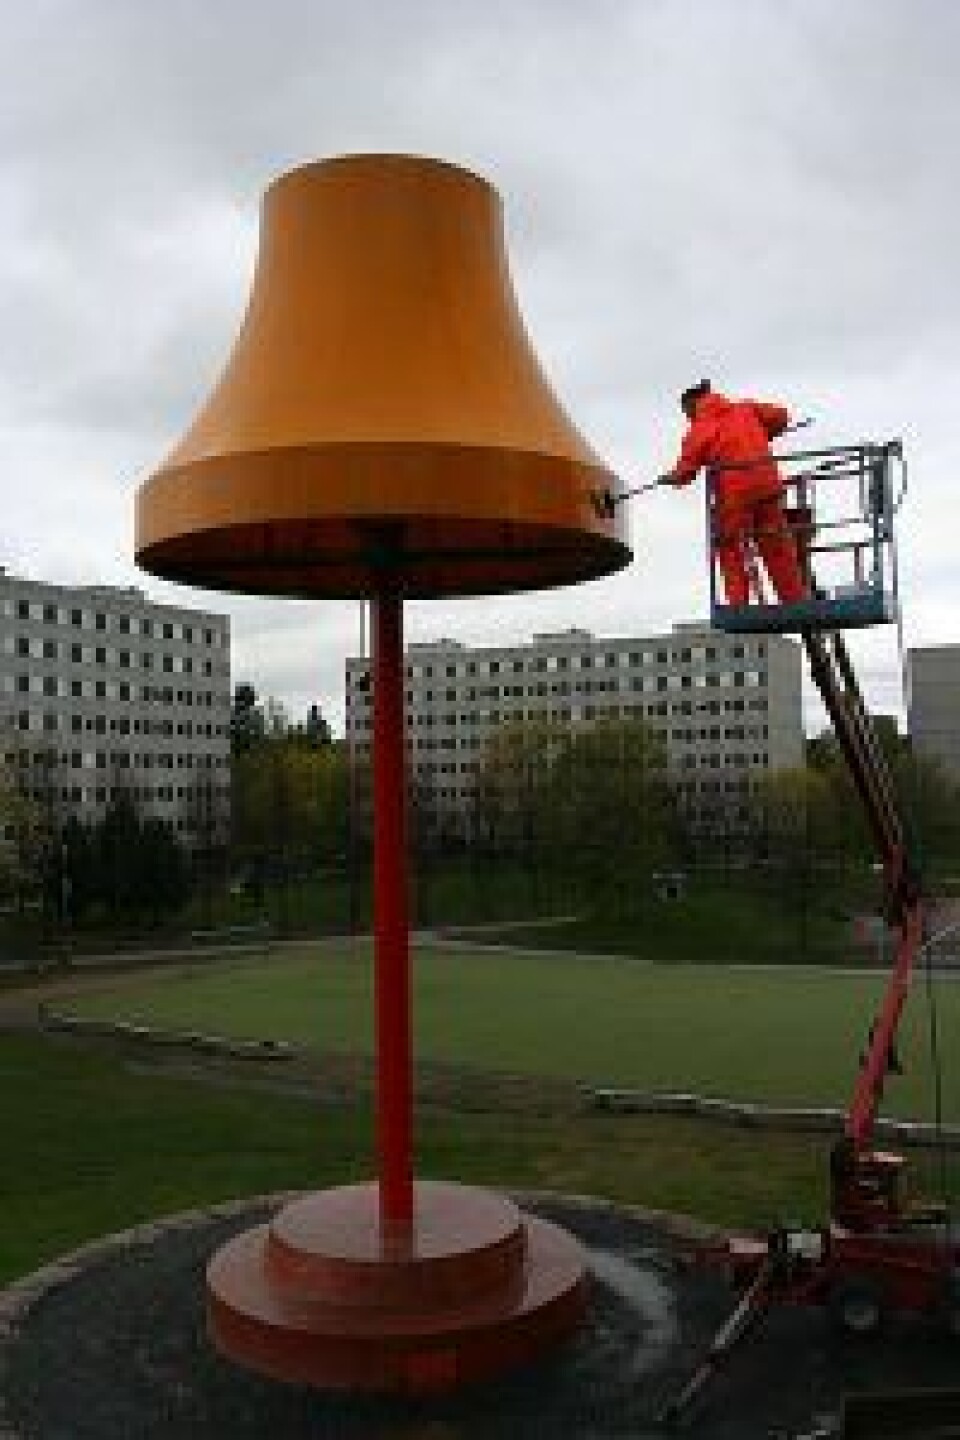 Den store lampa Engebretsen rapper om er kunstverket 'Storstua' av Fredrik og Martin Raddum. Foto: Kulturetaten, Oslo kommune/Wikipedia.